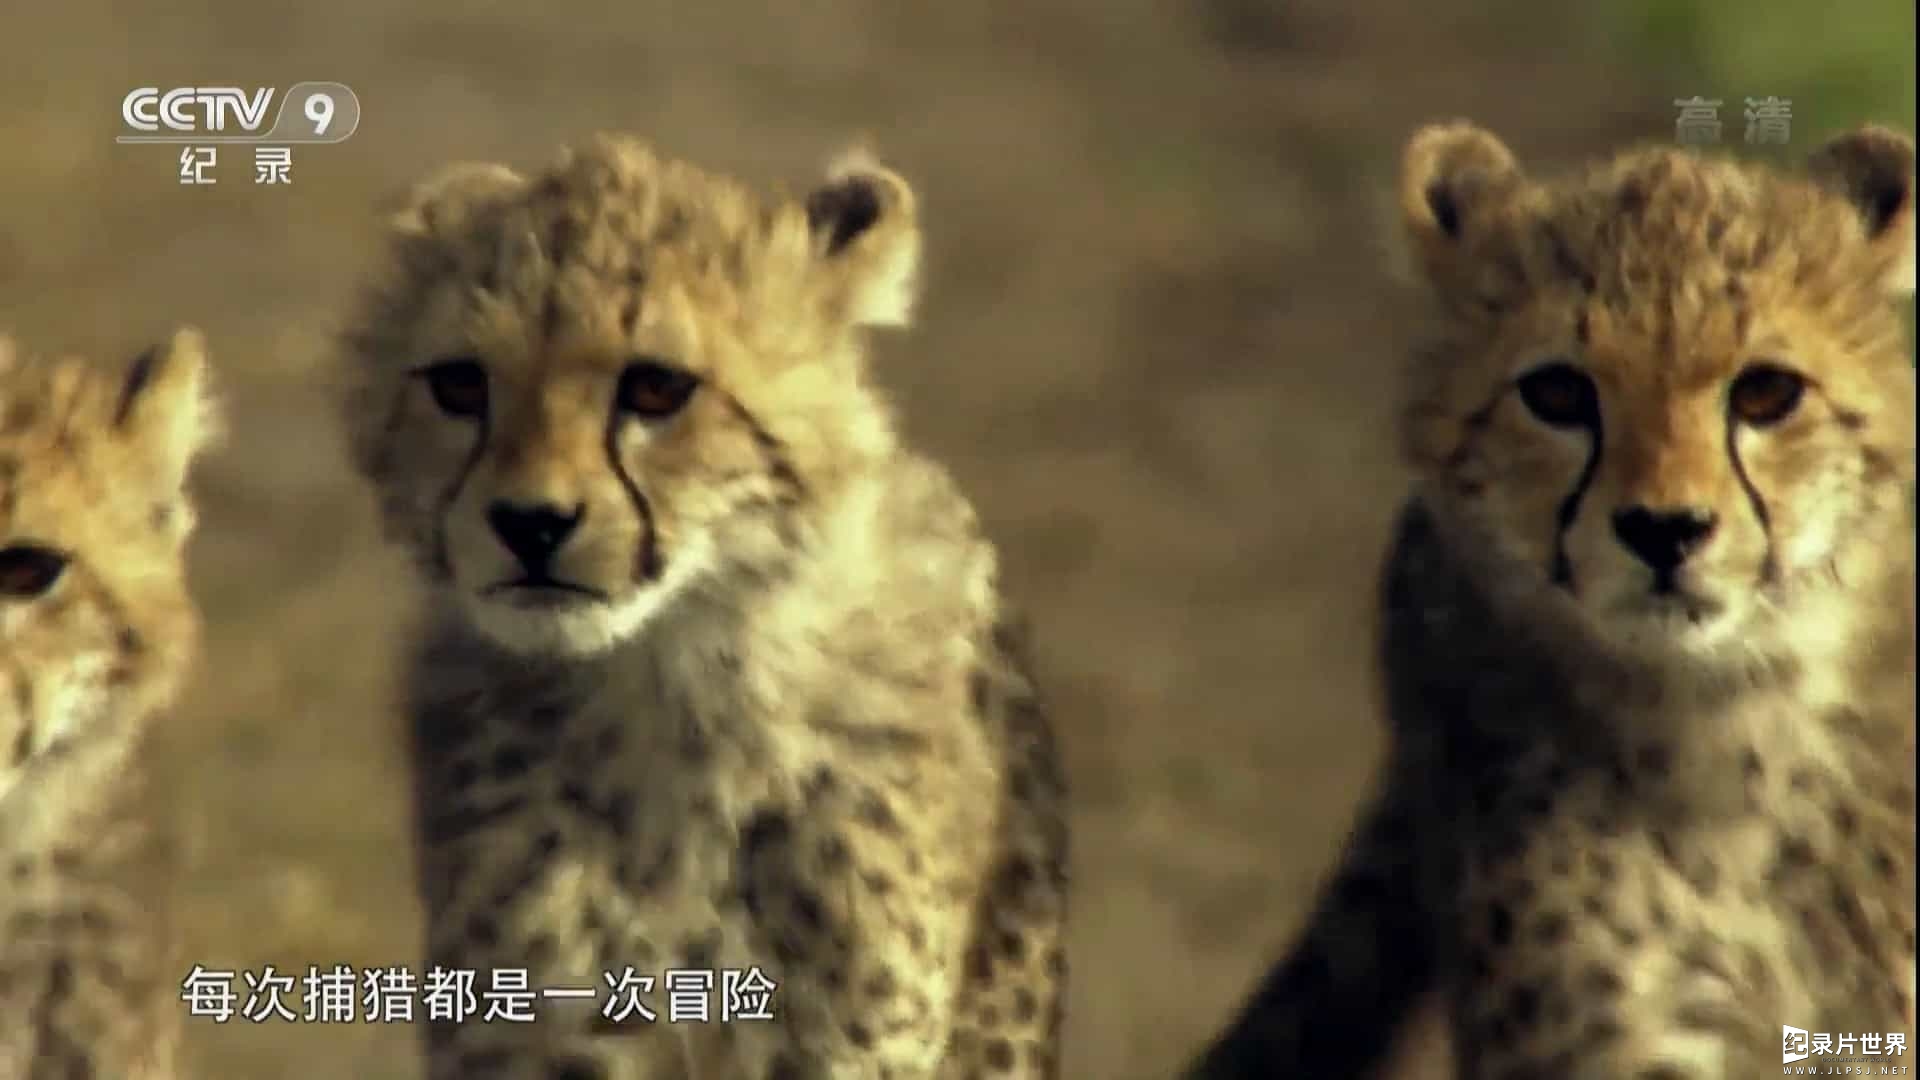 央视纪录片《猎豹-极速追击 Cheetah:Price of Speed 2010》全1集